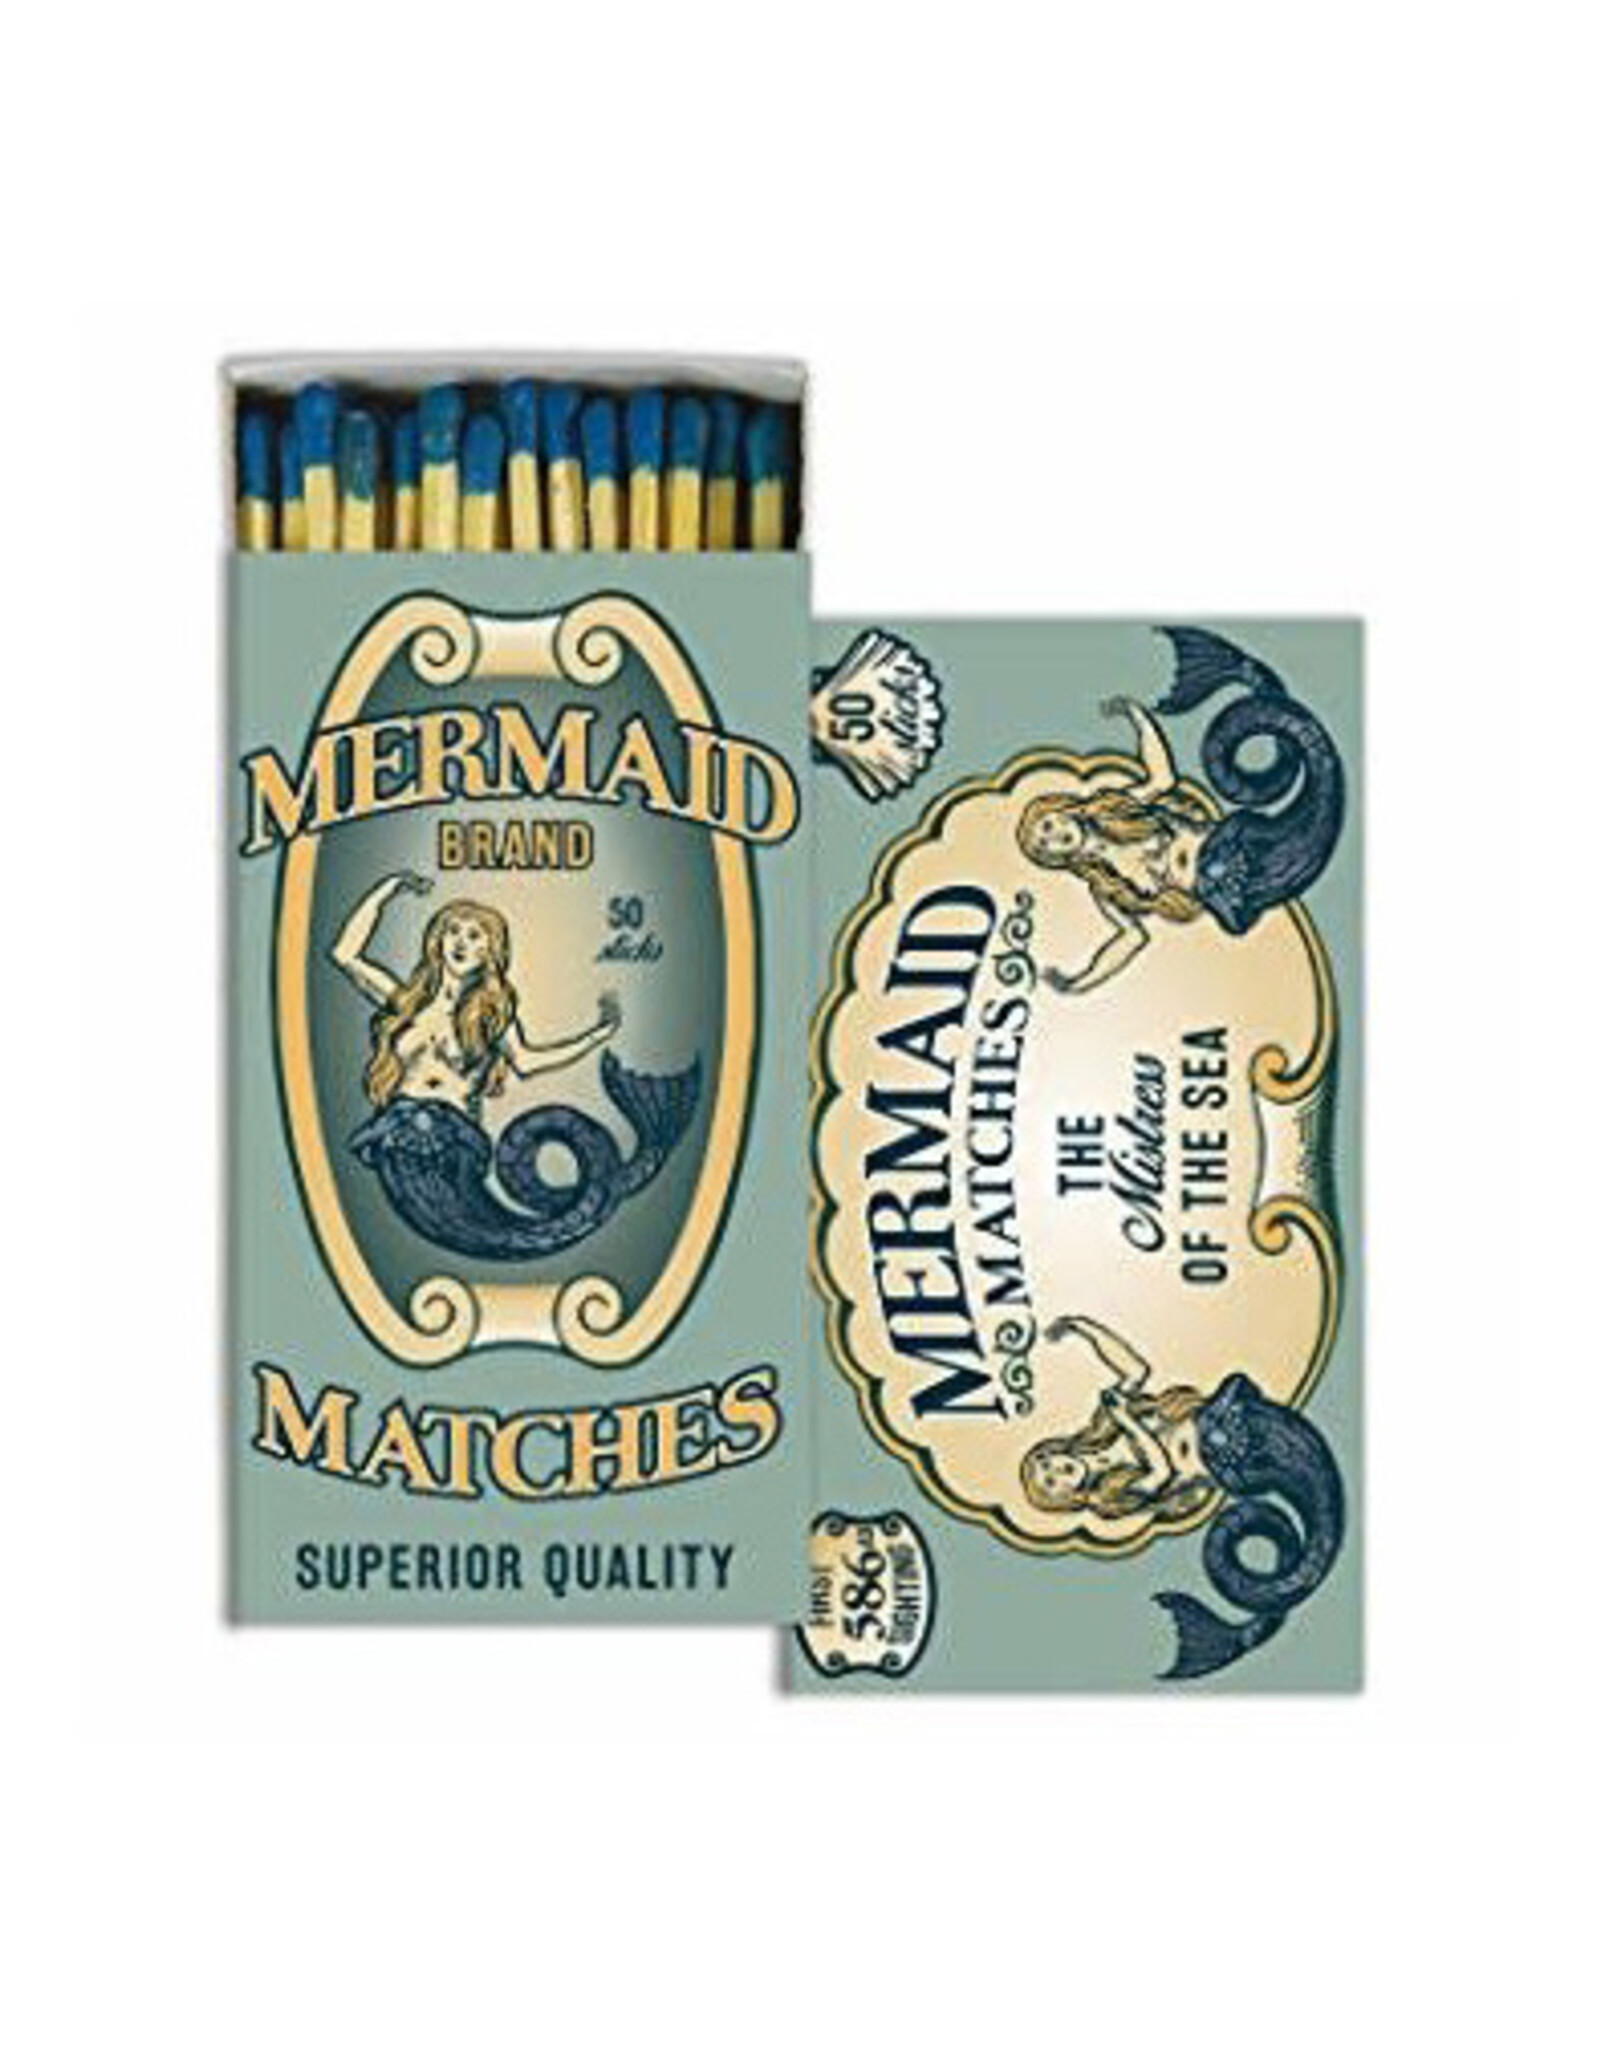 Matches - Mermaid Brand